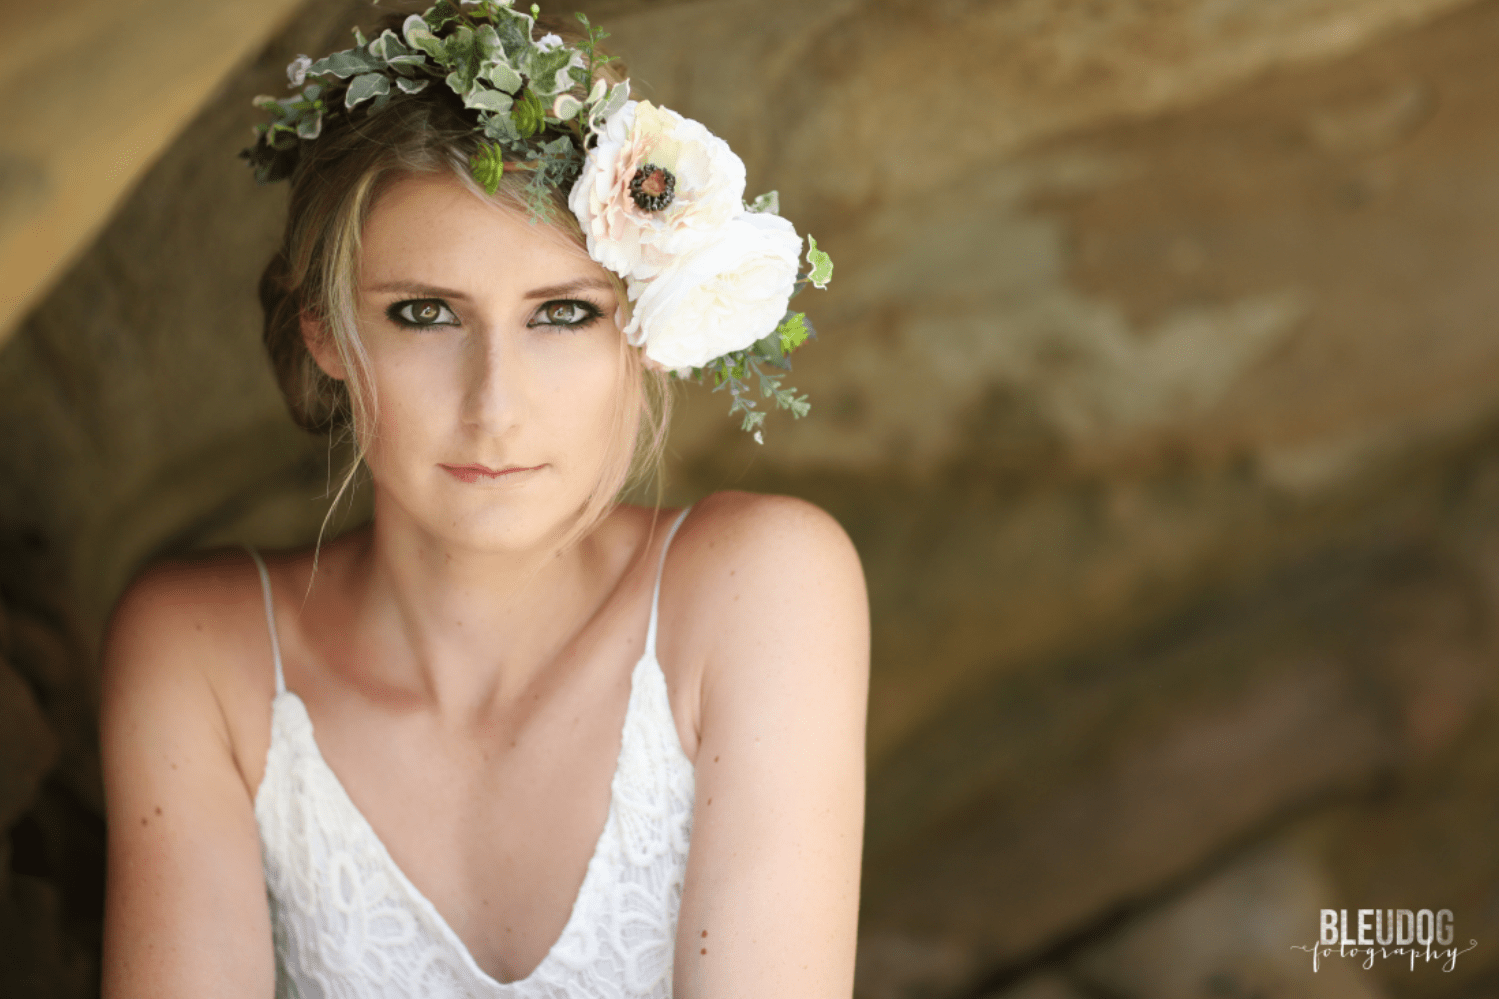 Blogger Spotlight: The Overwhelmed Bride